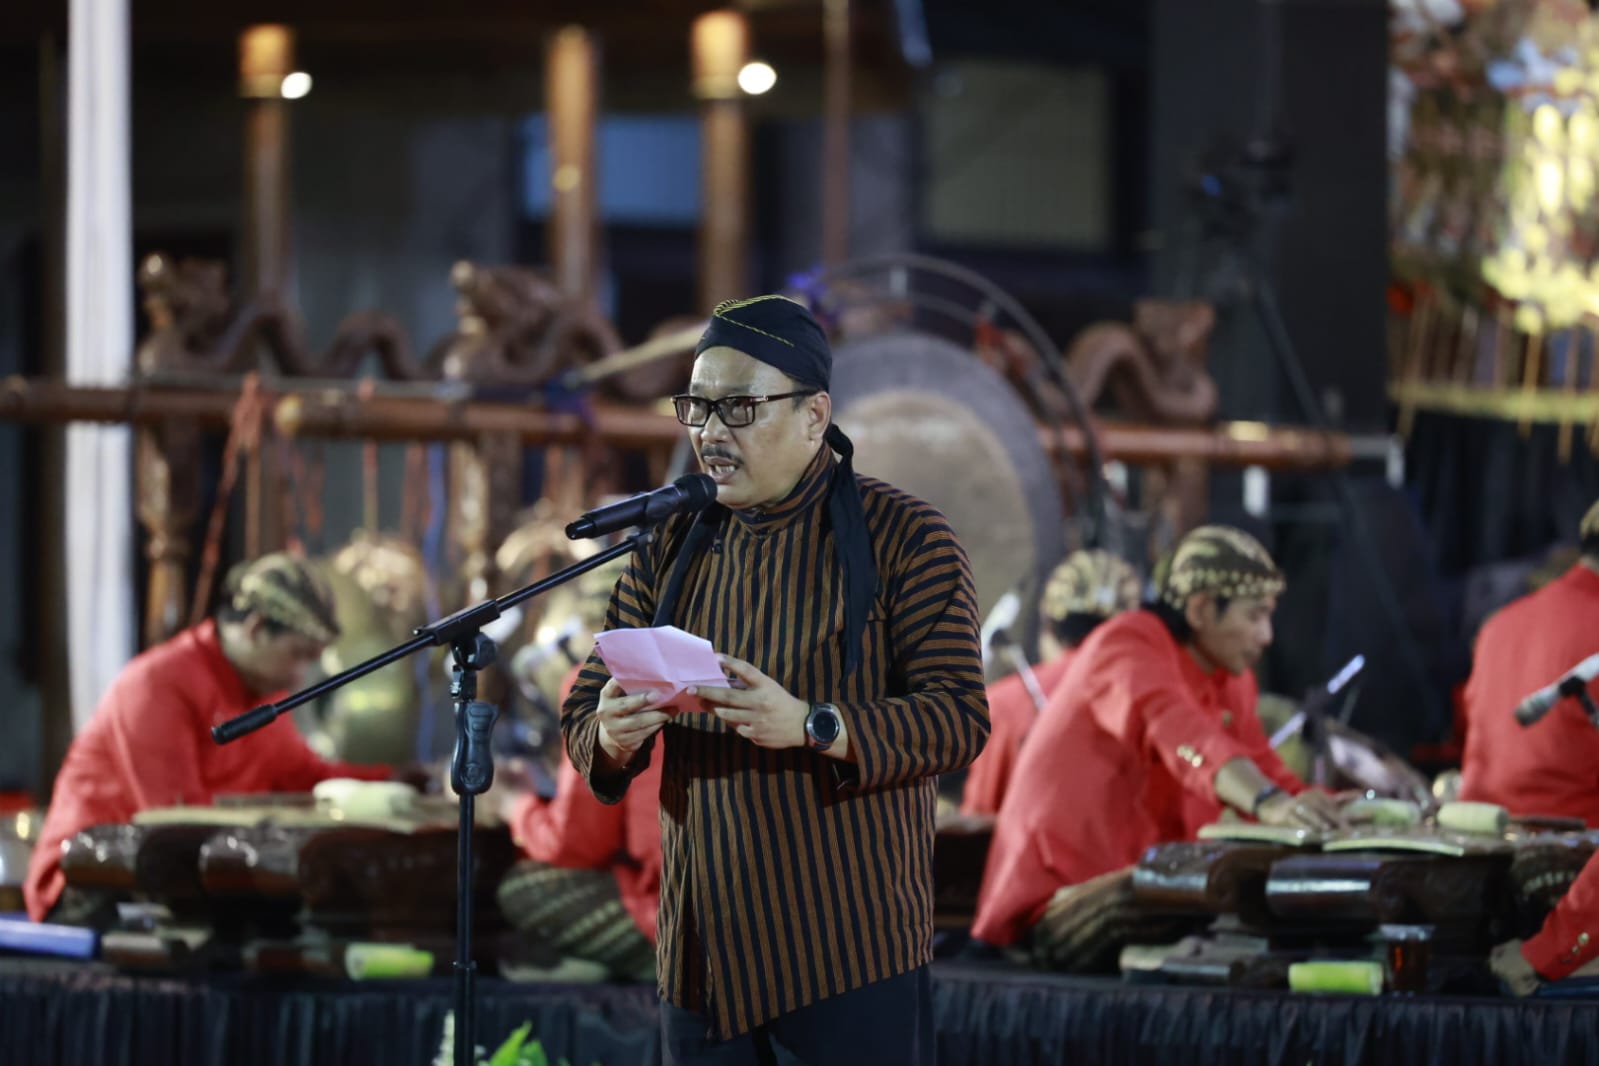 Pagelaran Wayang Kulit: Peringatan Sumpah Pemuda ke-95 dan Syukuran Pusat Studi Arsip Statis Kepresidenan Presiden Sukarno